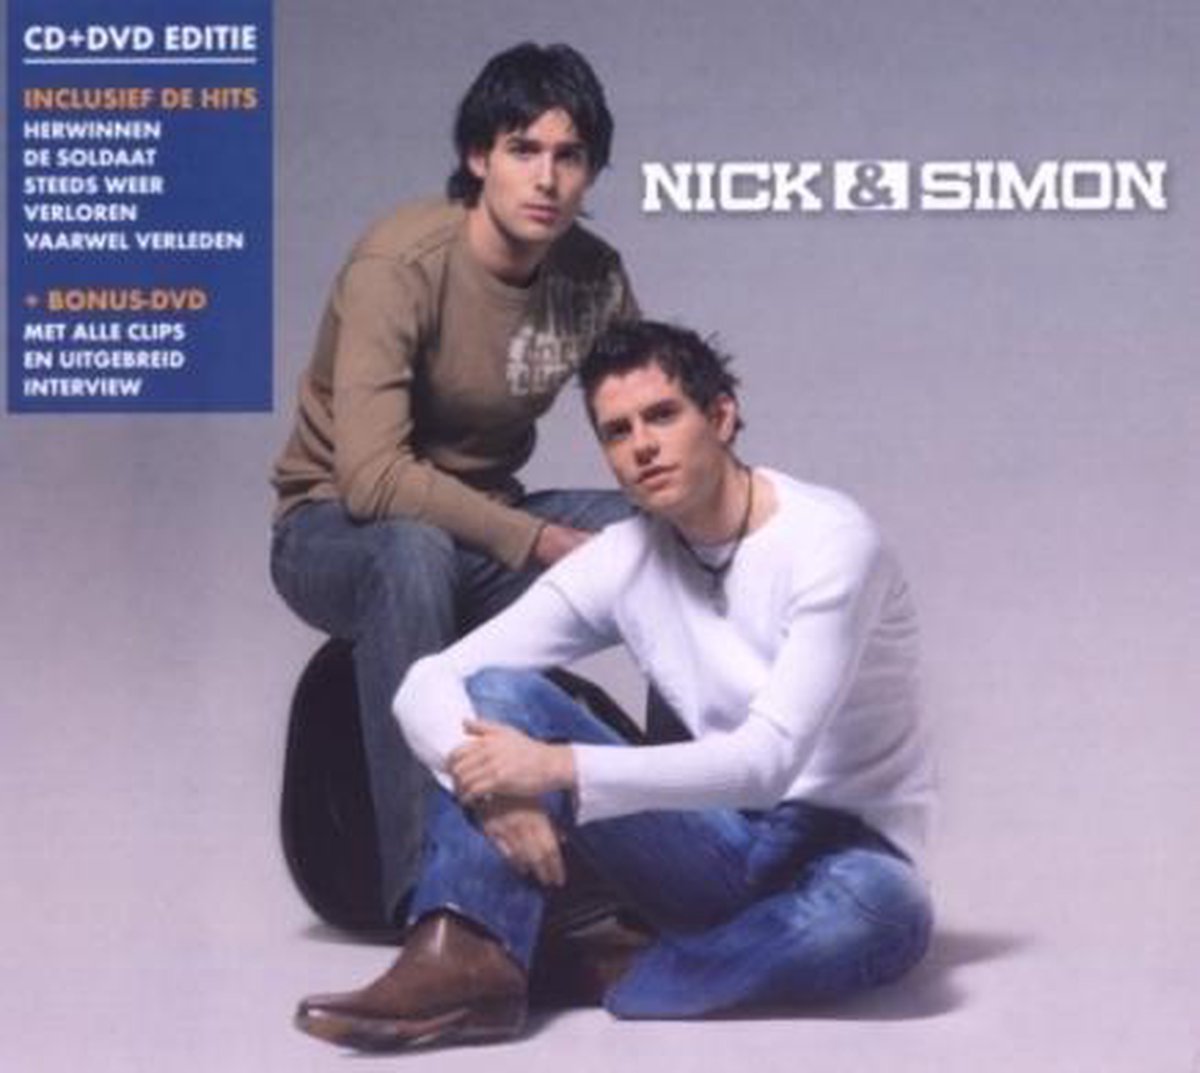 Nick & Simon CD+ DVD Limited Edition 2007 - Nick & Simon